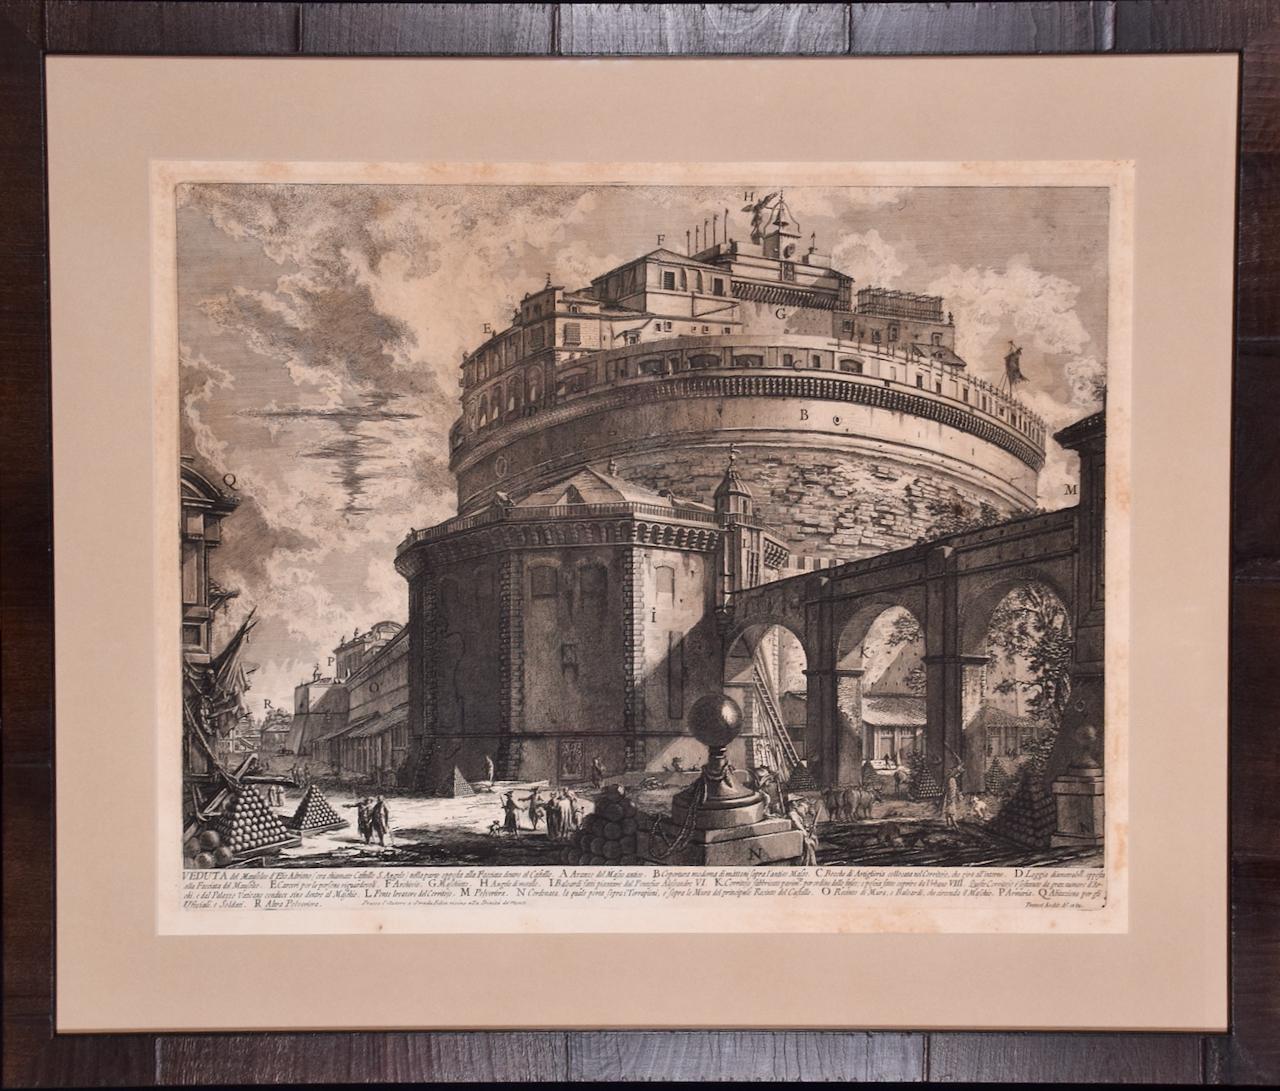 Hadrian's Mausoleum, Castel S. Angelo: Eine gerahmte Radierung von Piranesi aus dem 18. Jahrhundert